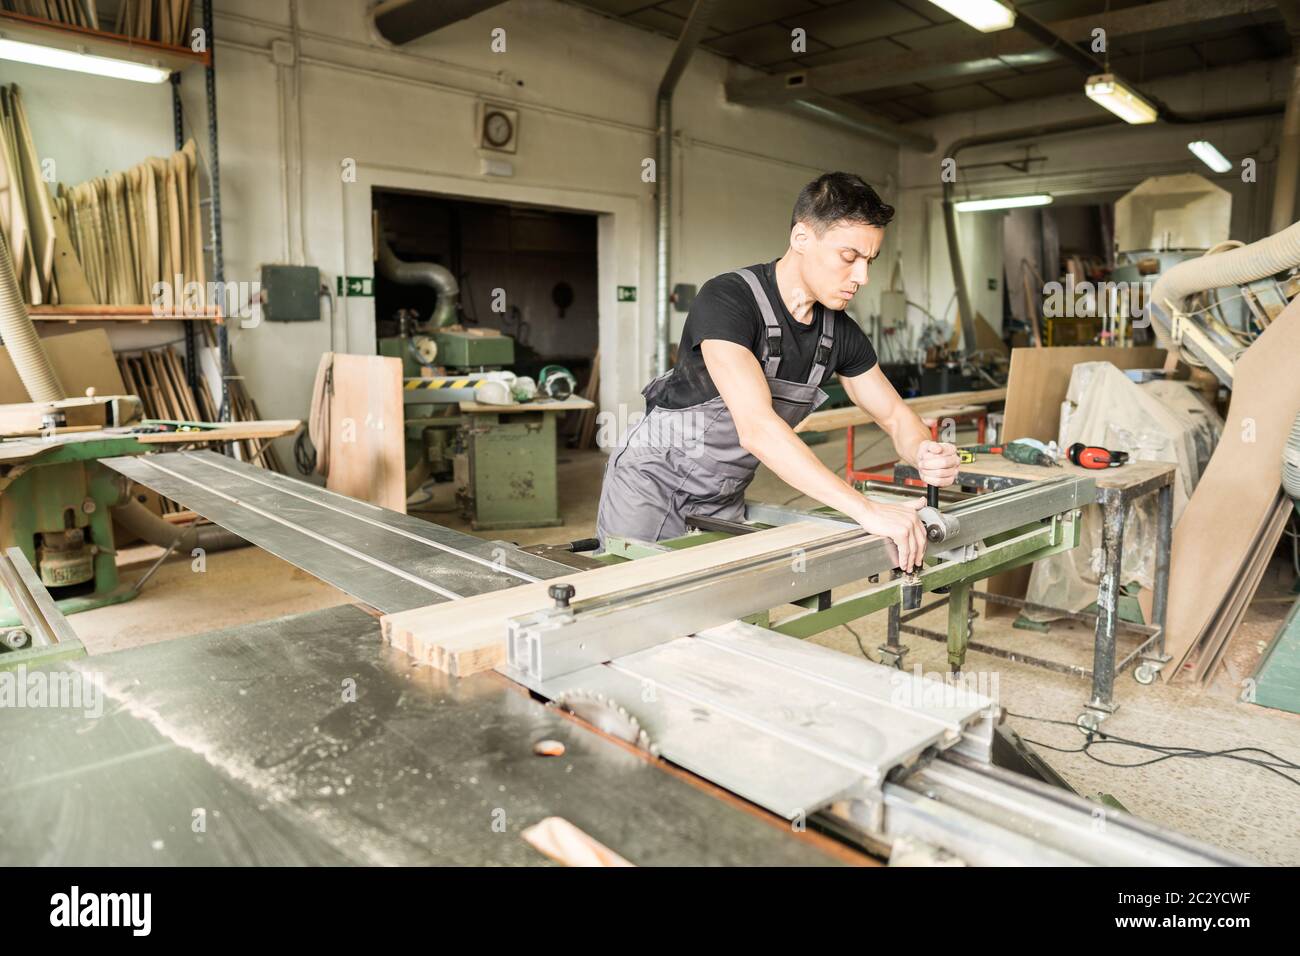 Un travailleur qui coupe sur une scie à table coulissante en usine. Photo intermédiaire. Banque D'Images